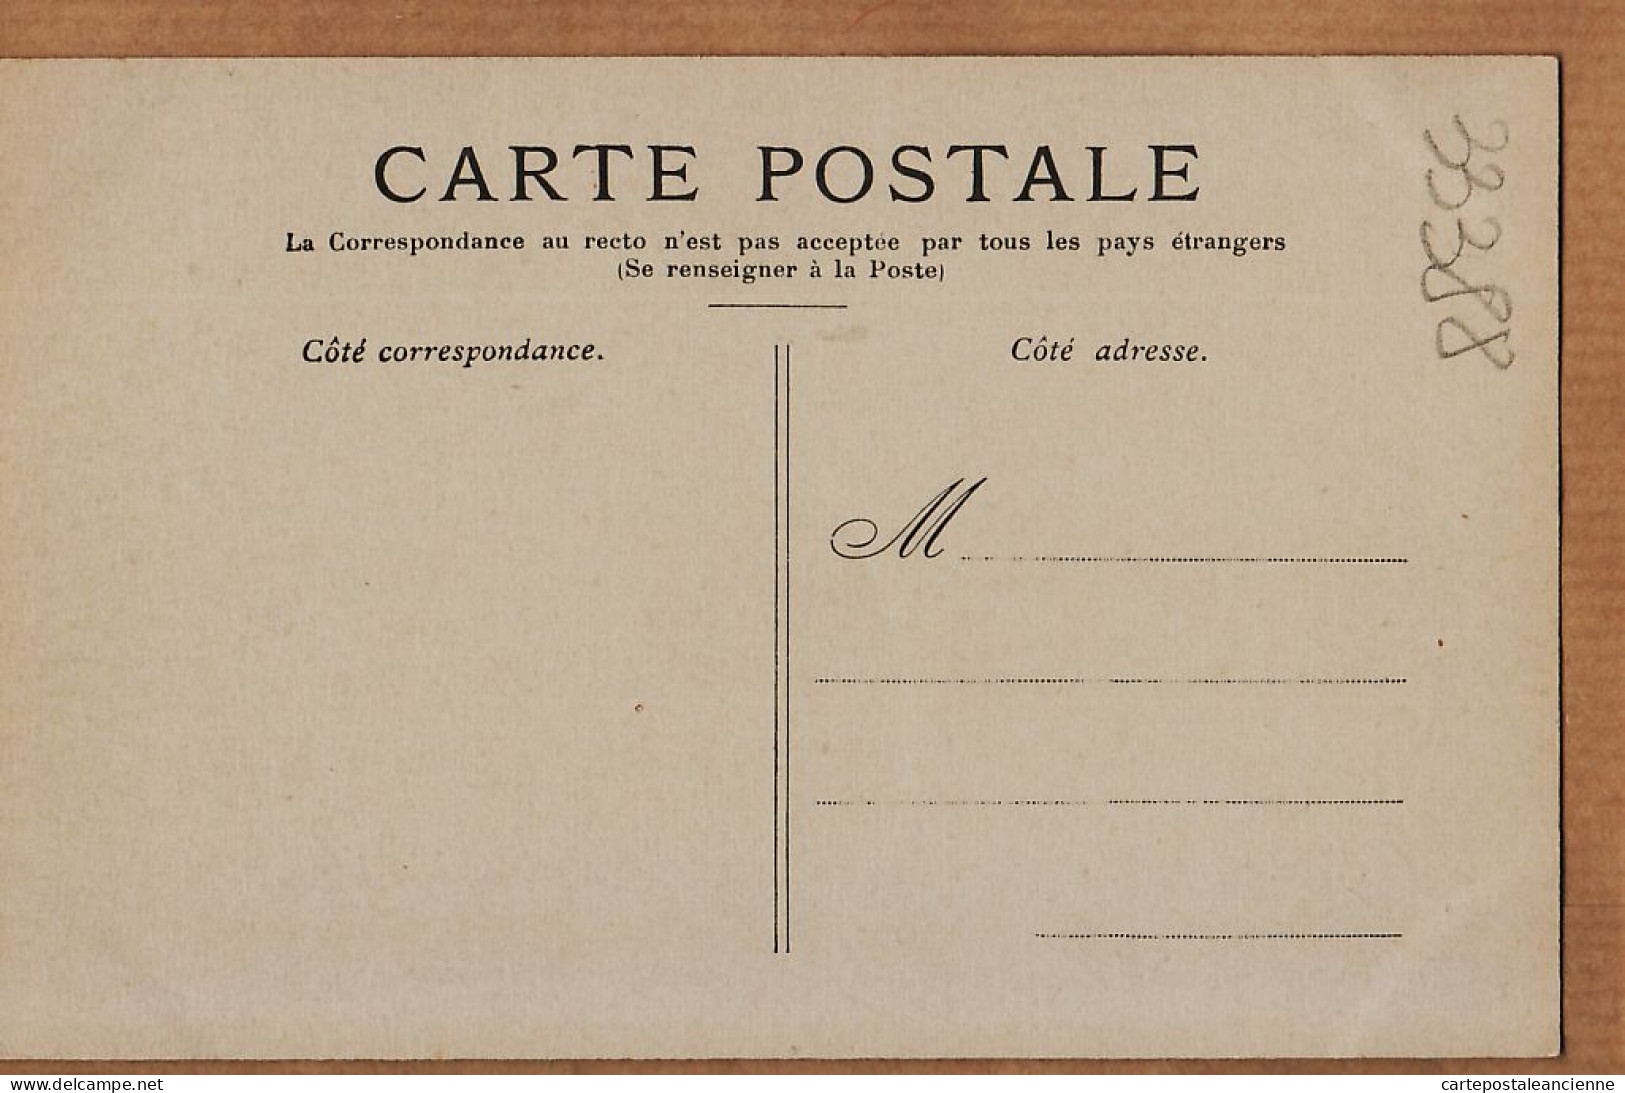 24133 /⭐ ◉  PARIS III Le Conservatoire Des ARTS Et METIERS ( Sans Automobiles ) 1890s Etat:PARFAIT - District 03